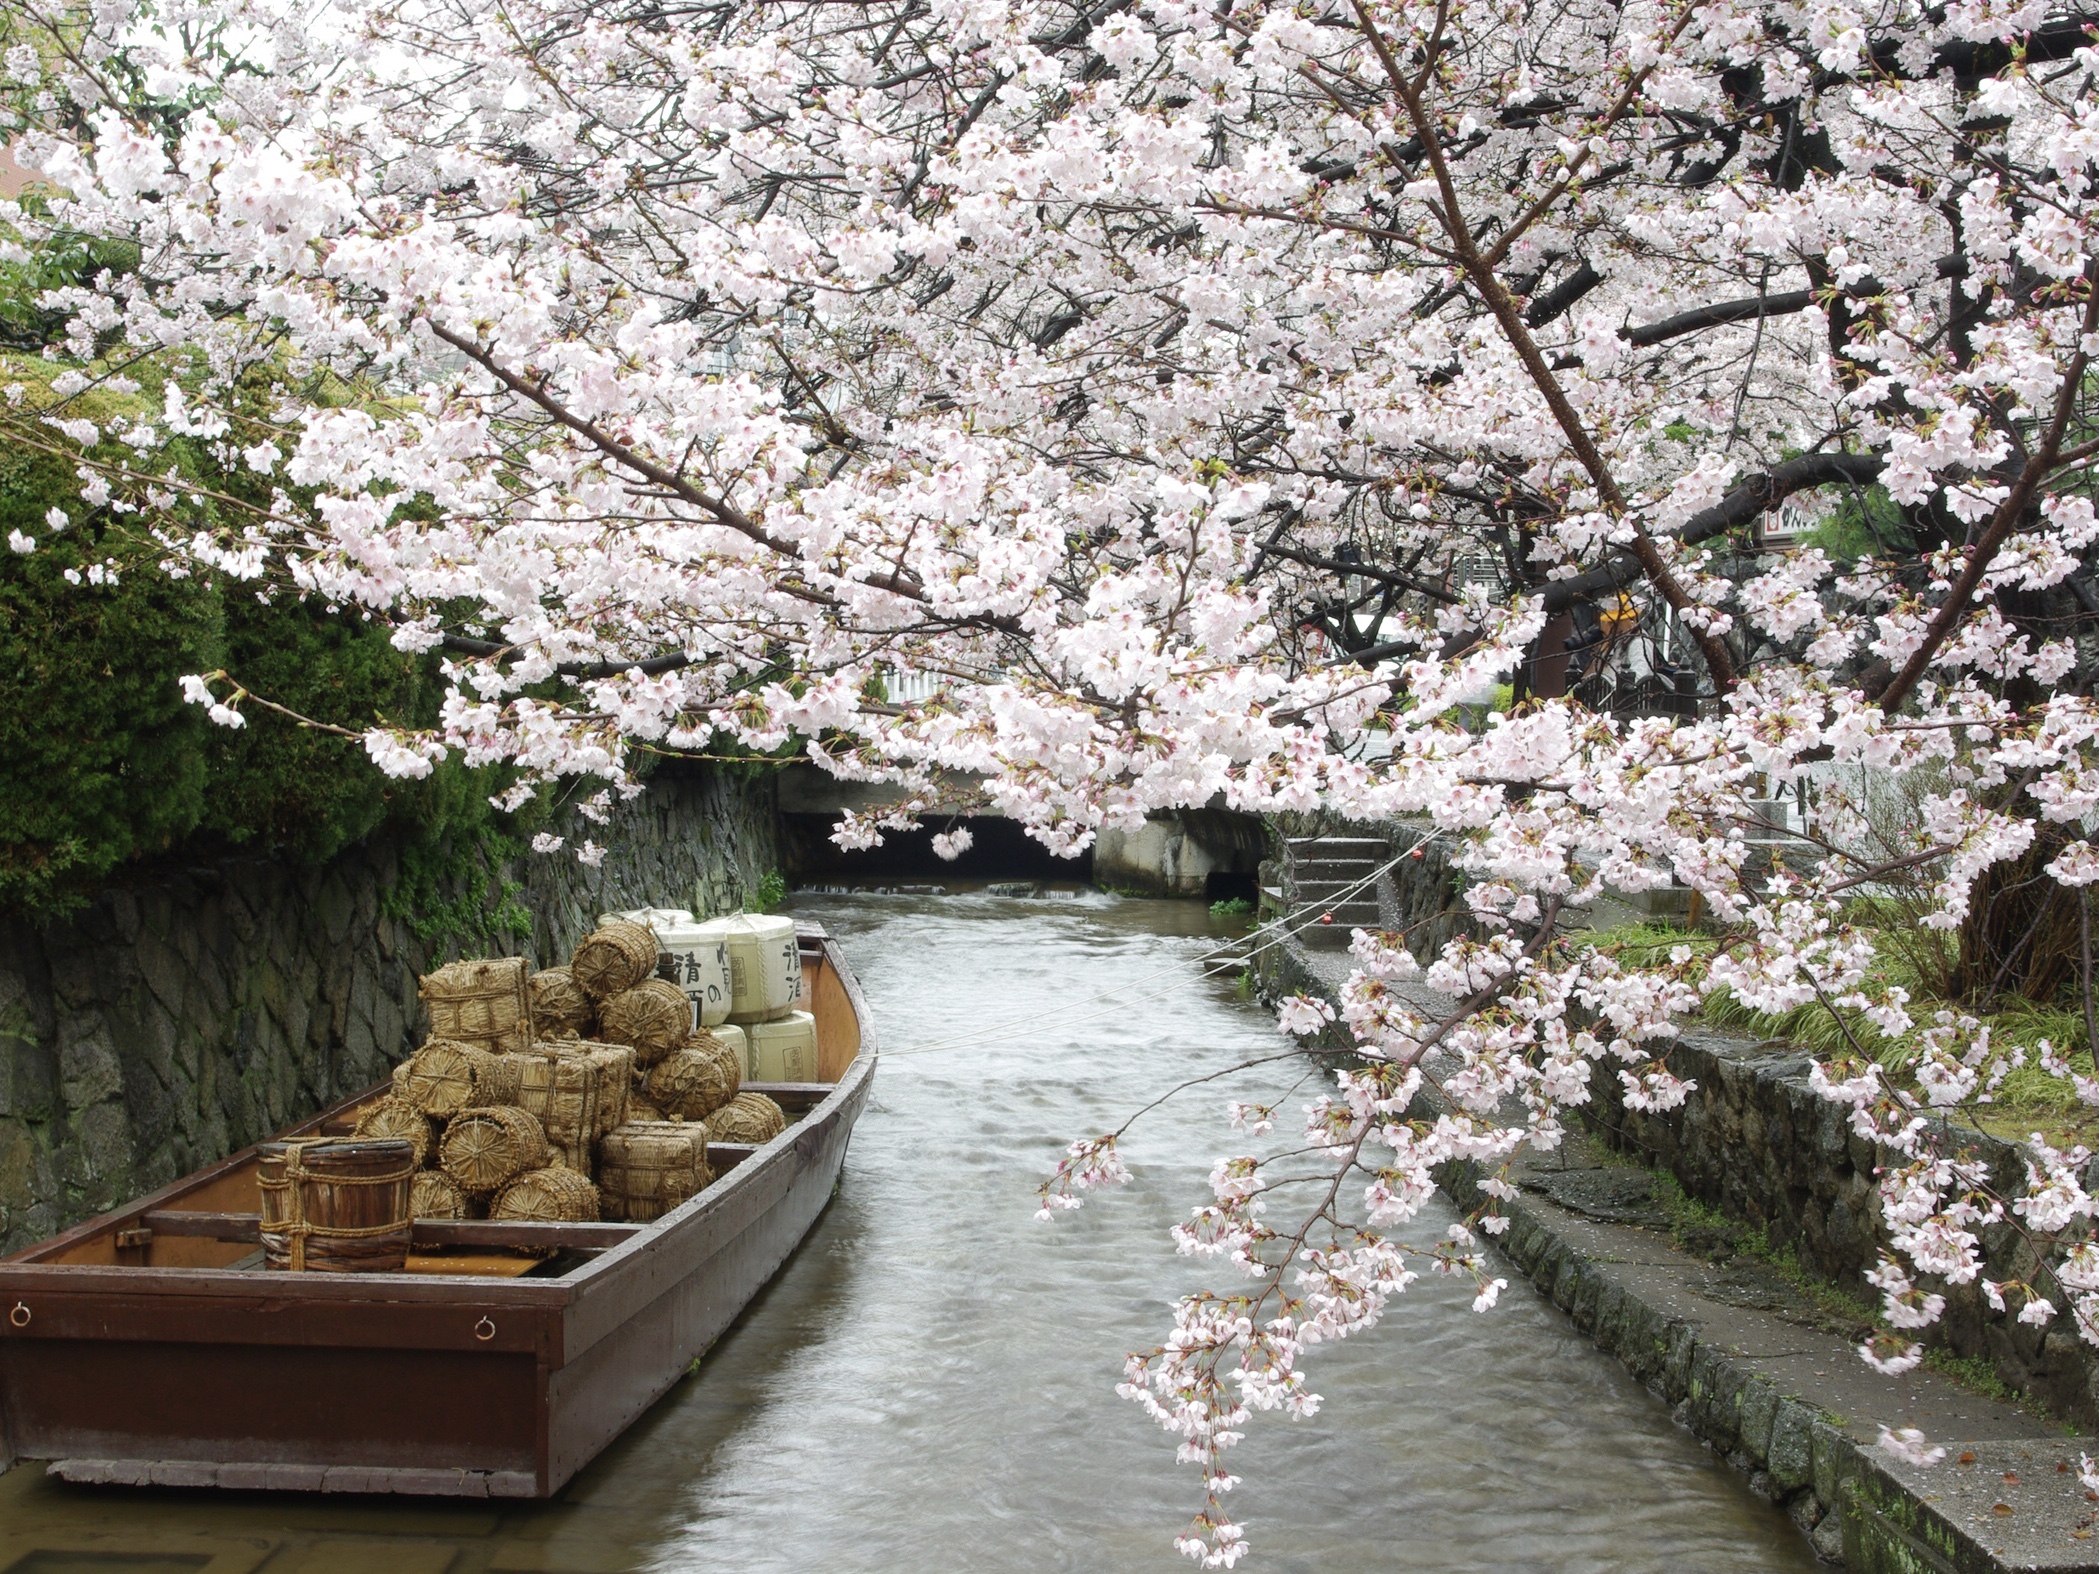 Spring Scenes in Kyoto, Japan